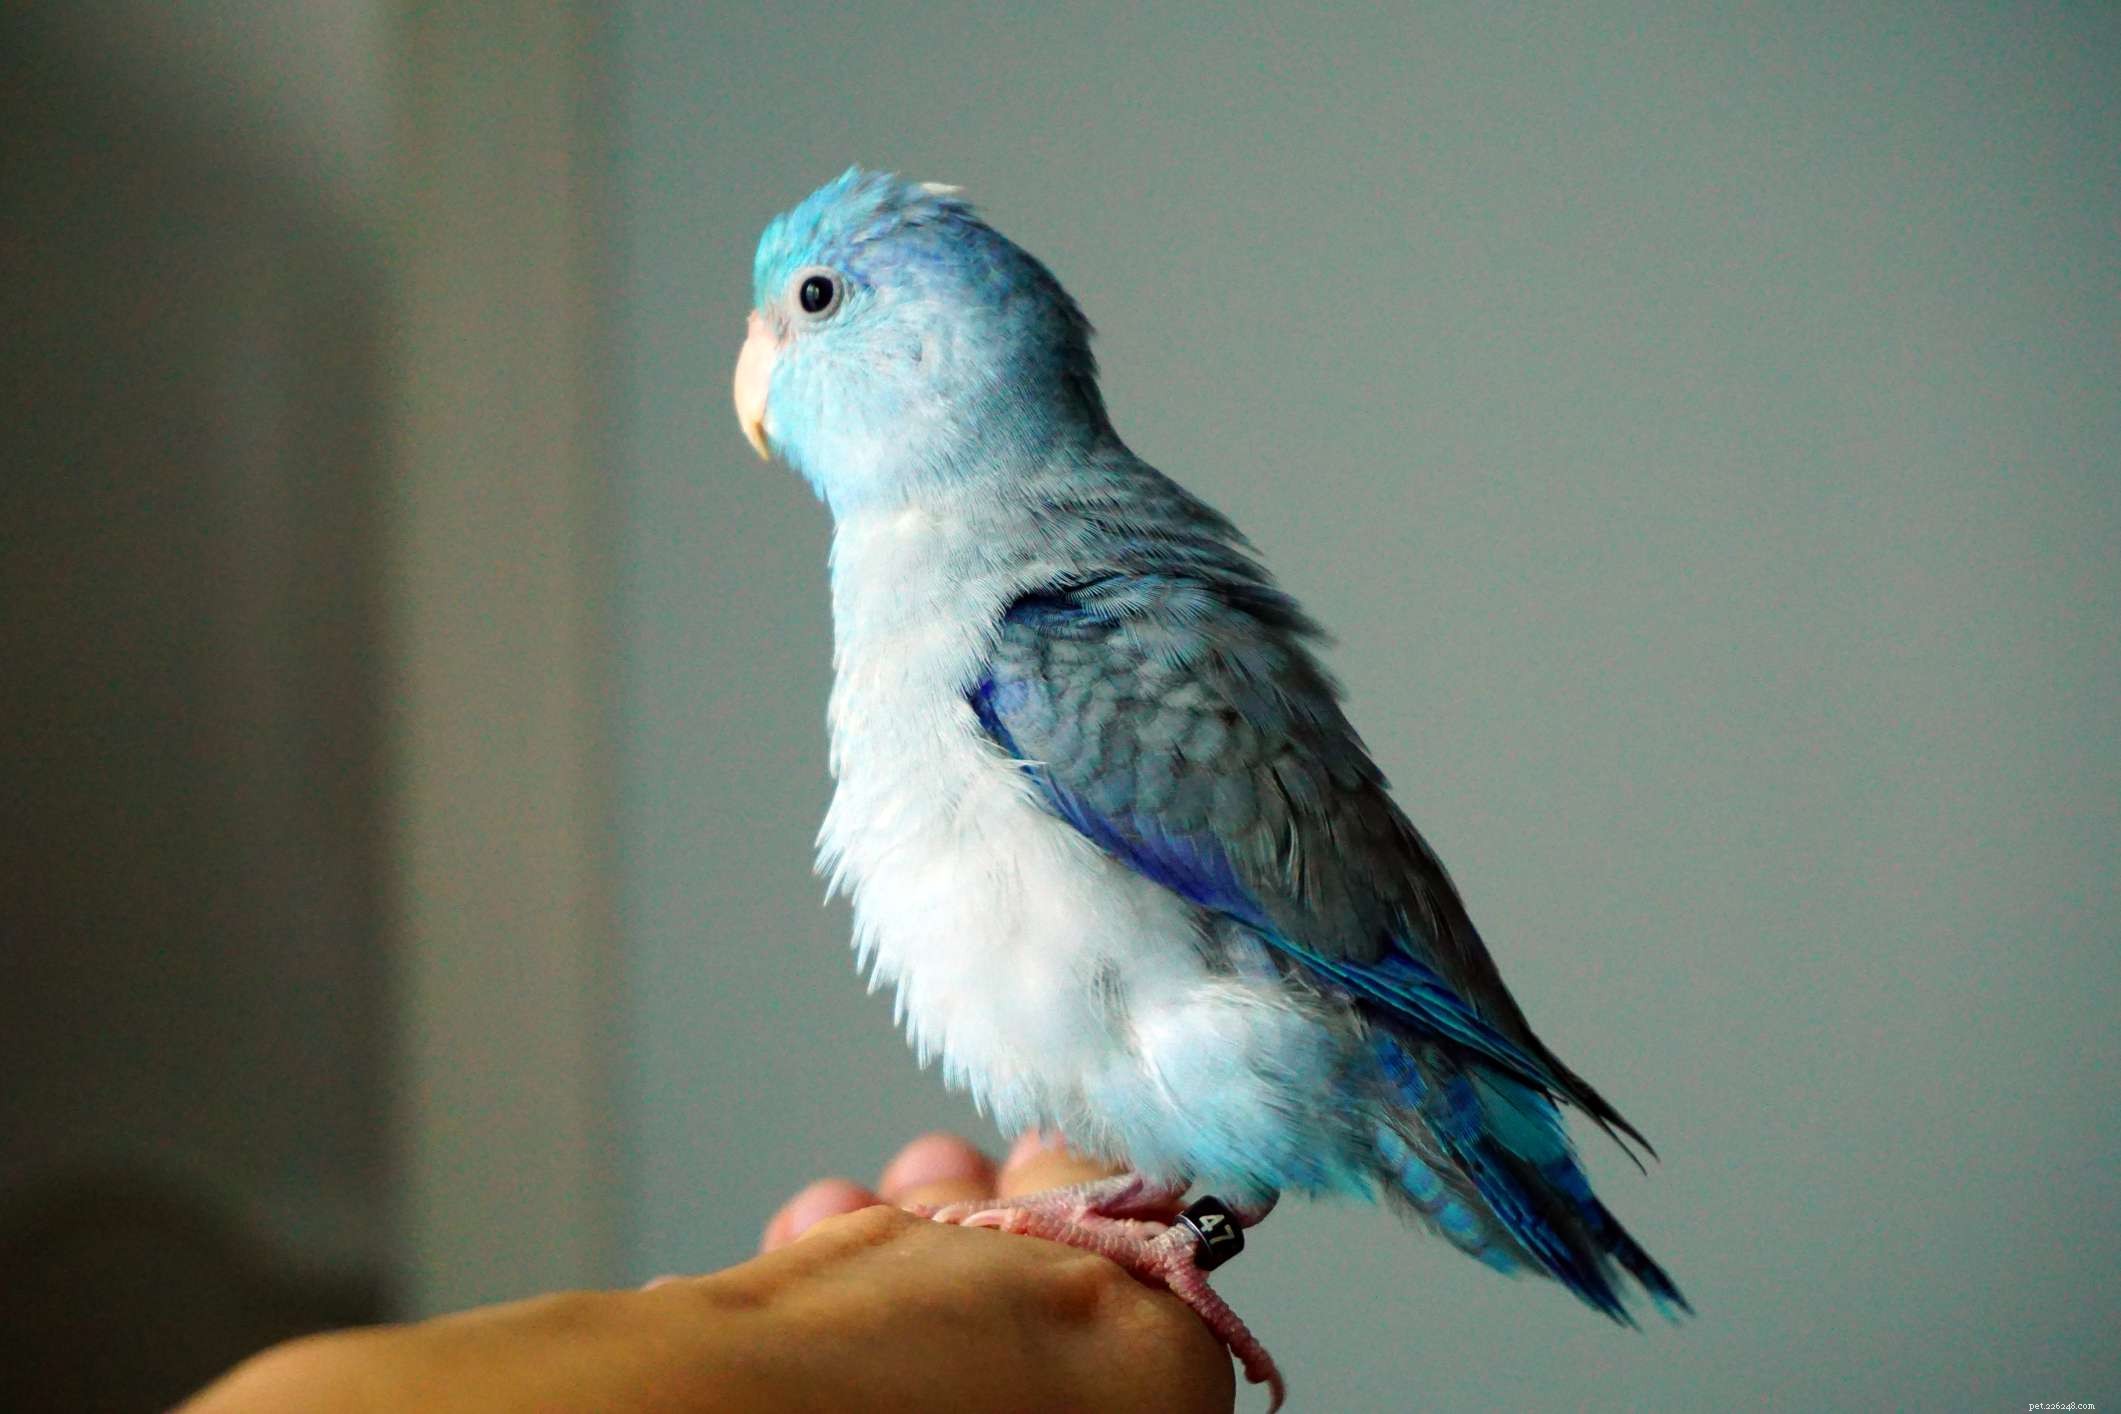 8 видов синих попугаев, которых лучше всего держать в качестве домашних животных